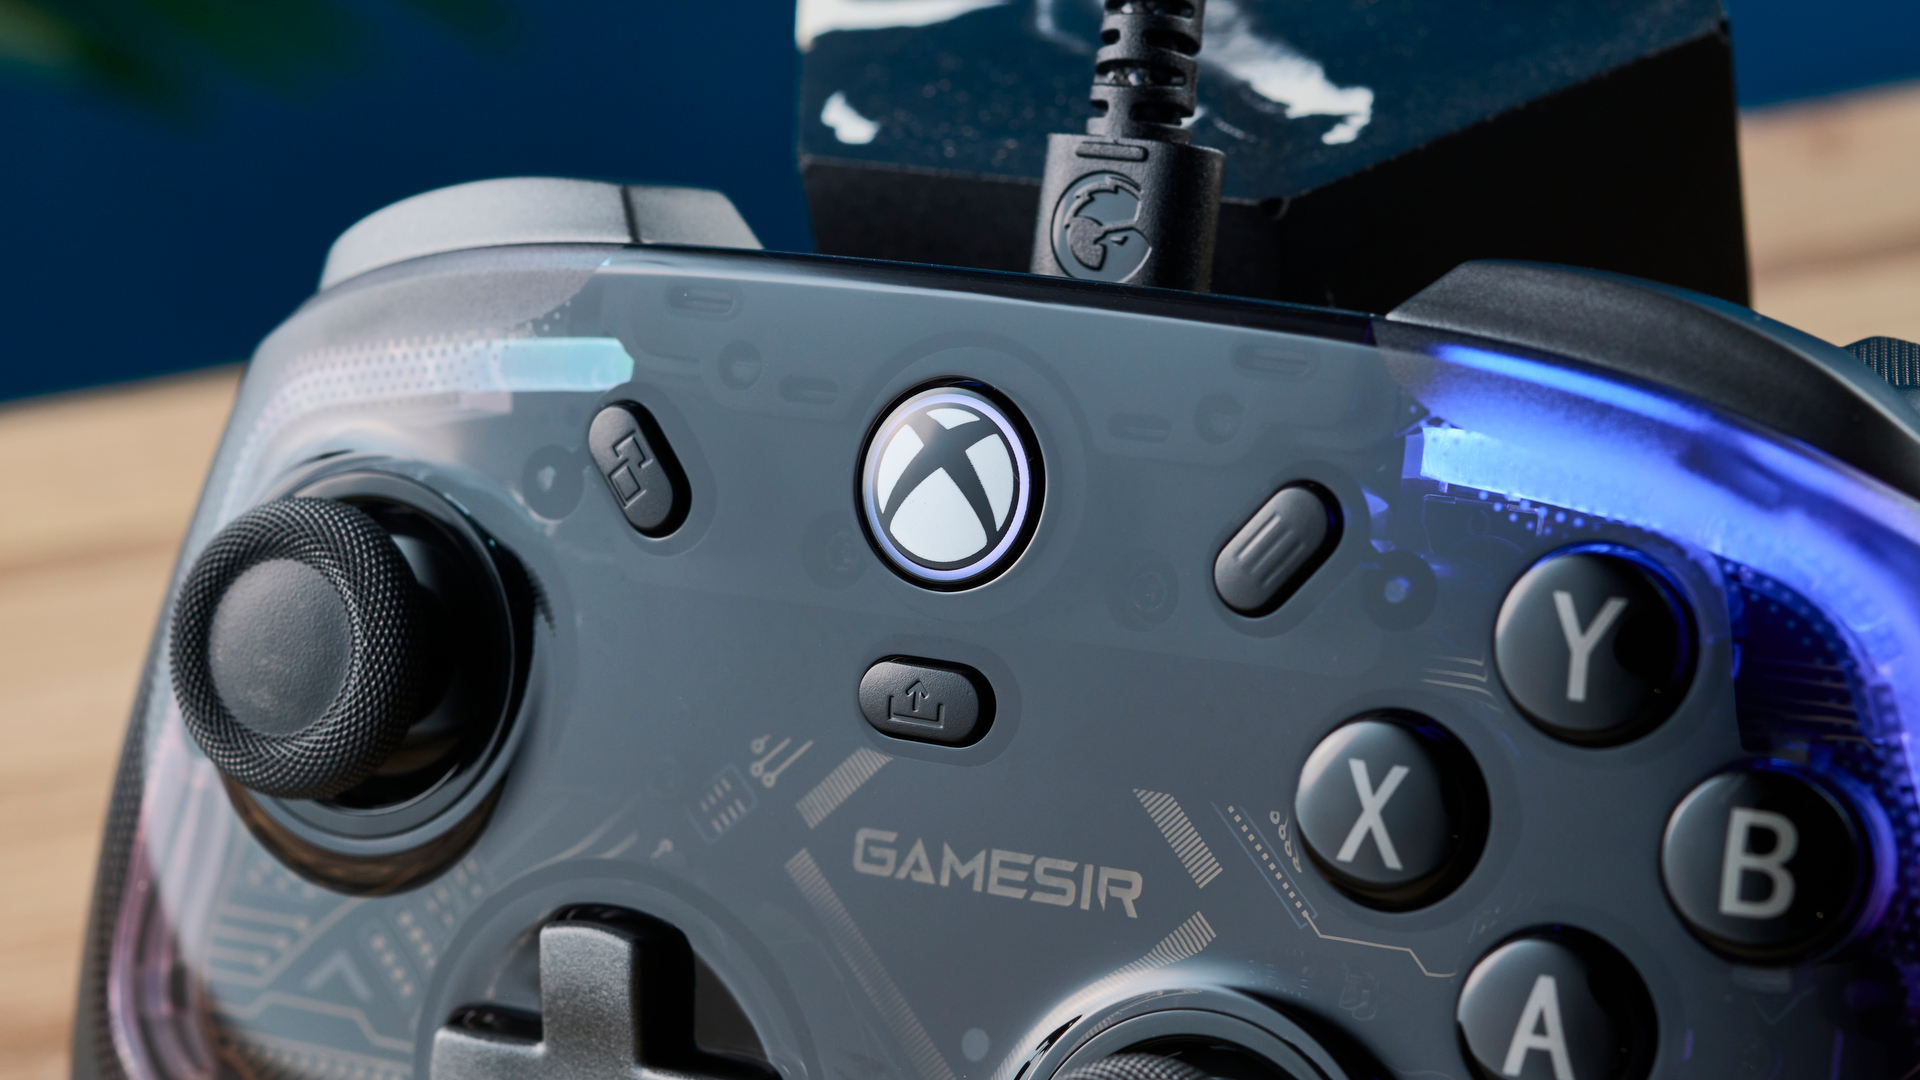 De GameSir Kaleid bedrade Xbox/PC-controller.  De foto is een close-up van de Xbox-knop.